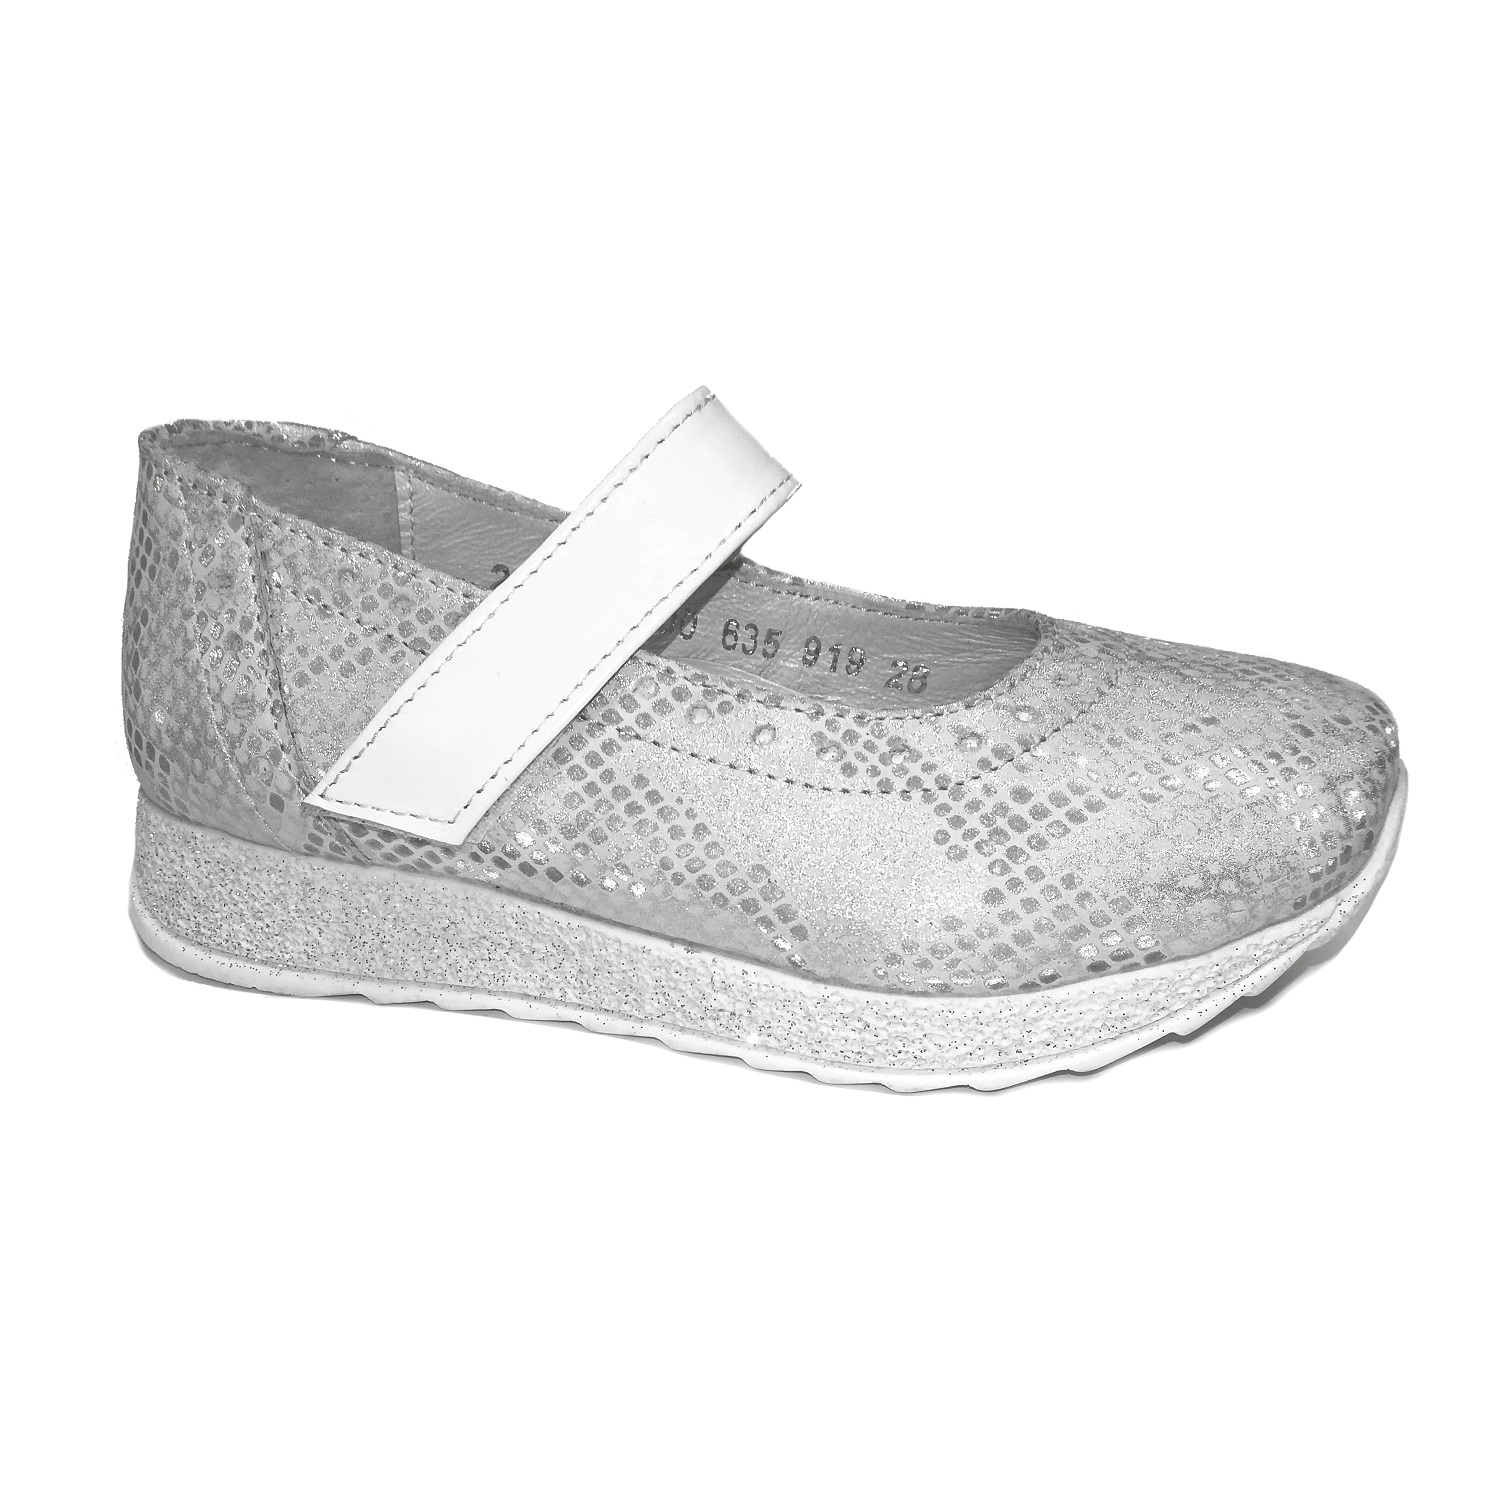 Дитячі туфлі для дівчинки, сріблясті 35 розміру (09700/635/919, 07700/635/919), Bistfor